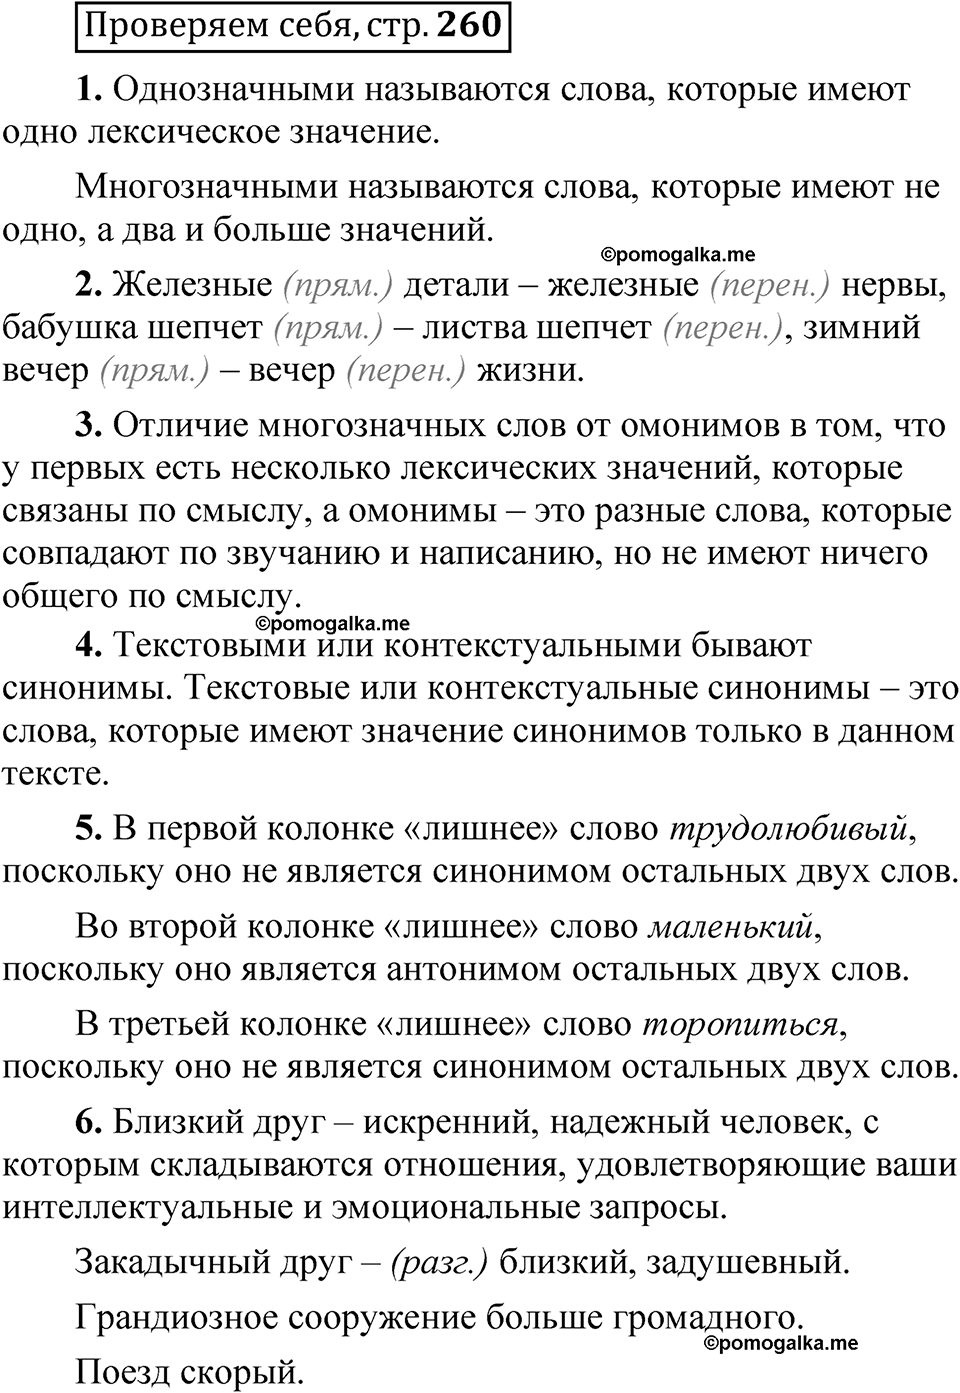 страница 260 Проверяем себя русский язык 5 класс Быстрова, Кибирева 1 часть 2021 год